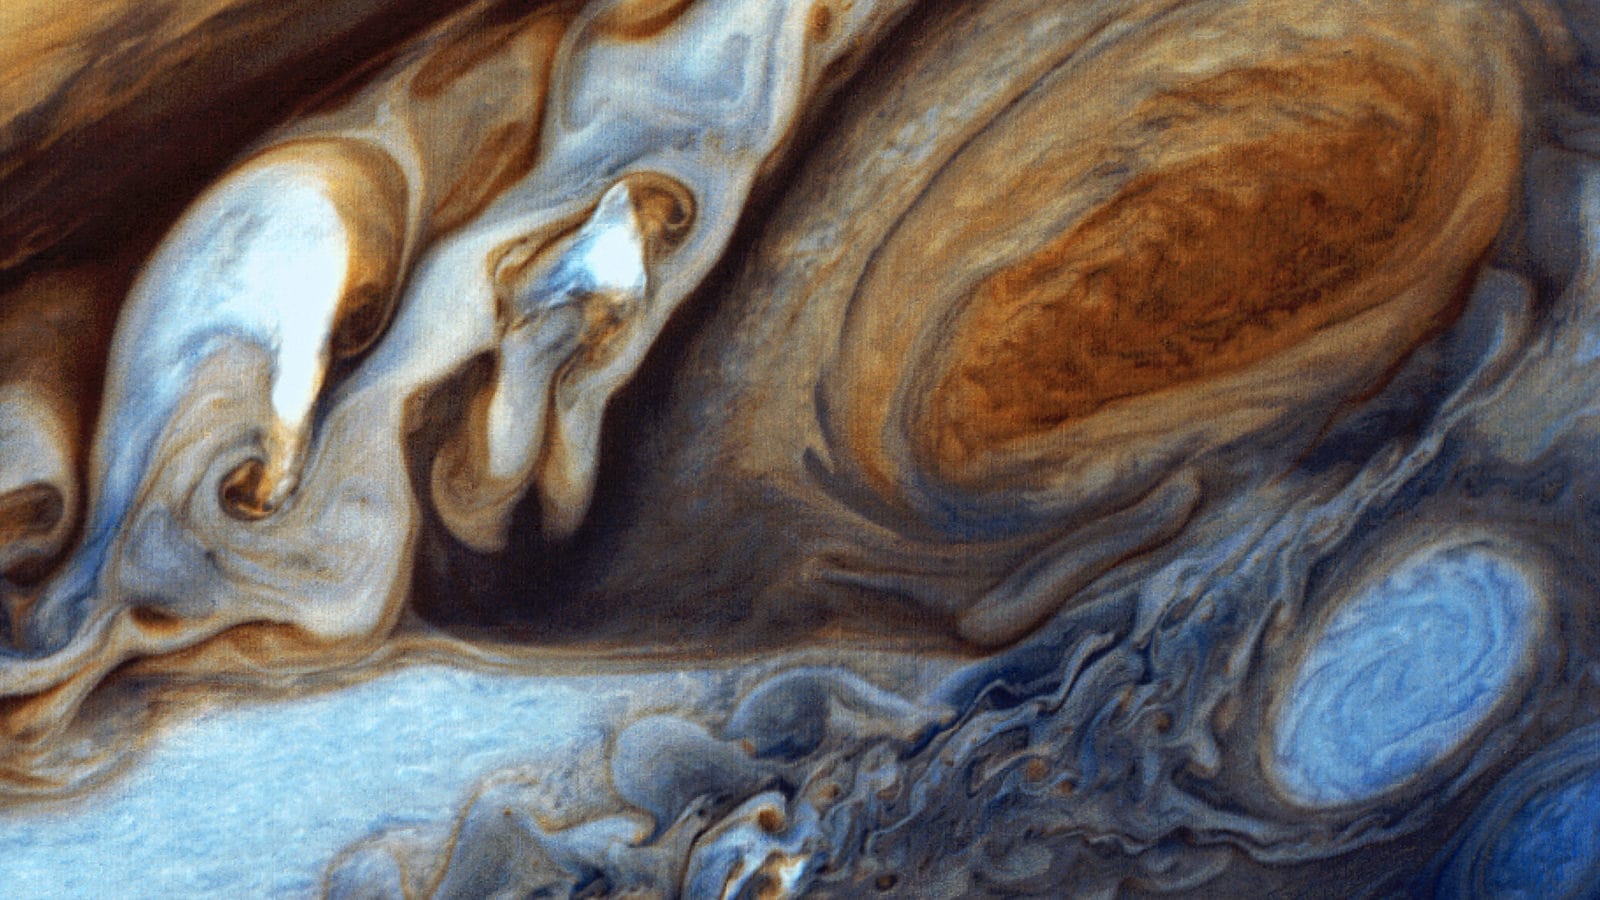 Foto do grande ponto vermelho de Jupiter tirada pela sonda Voyager 1